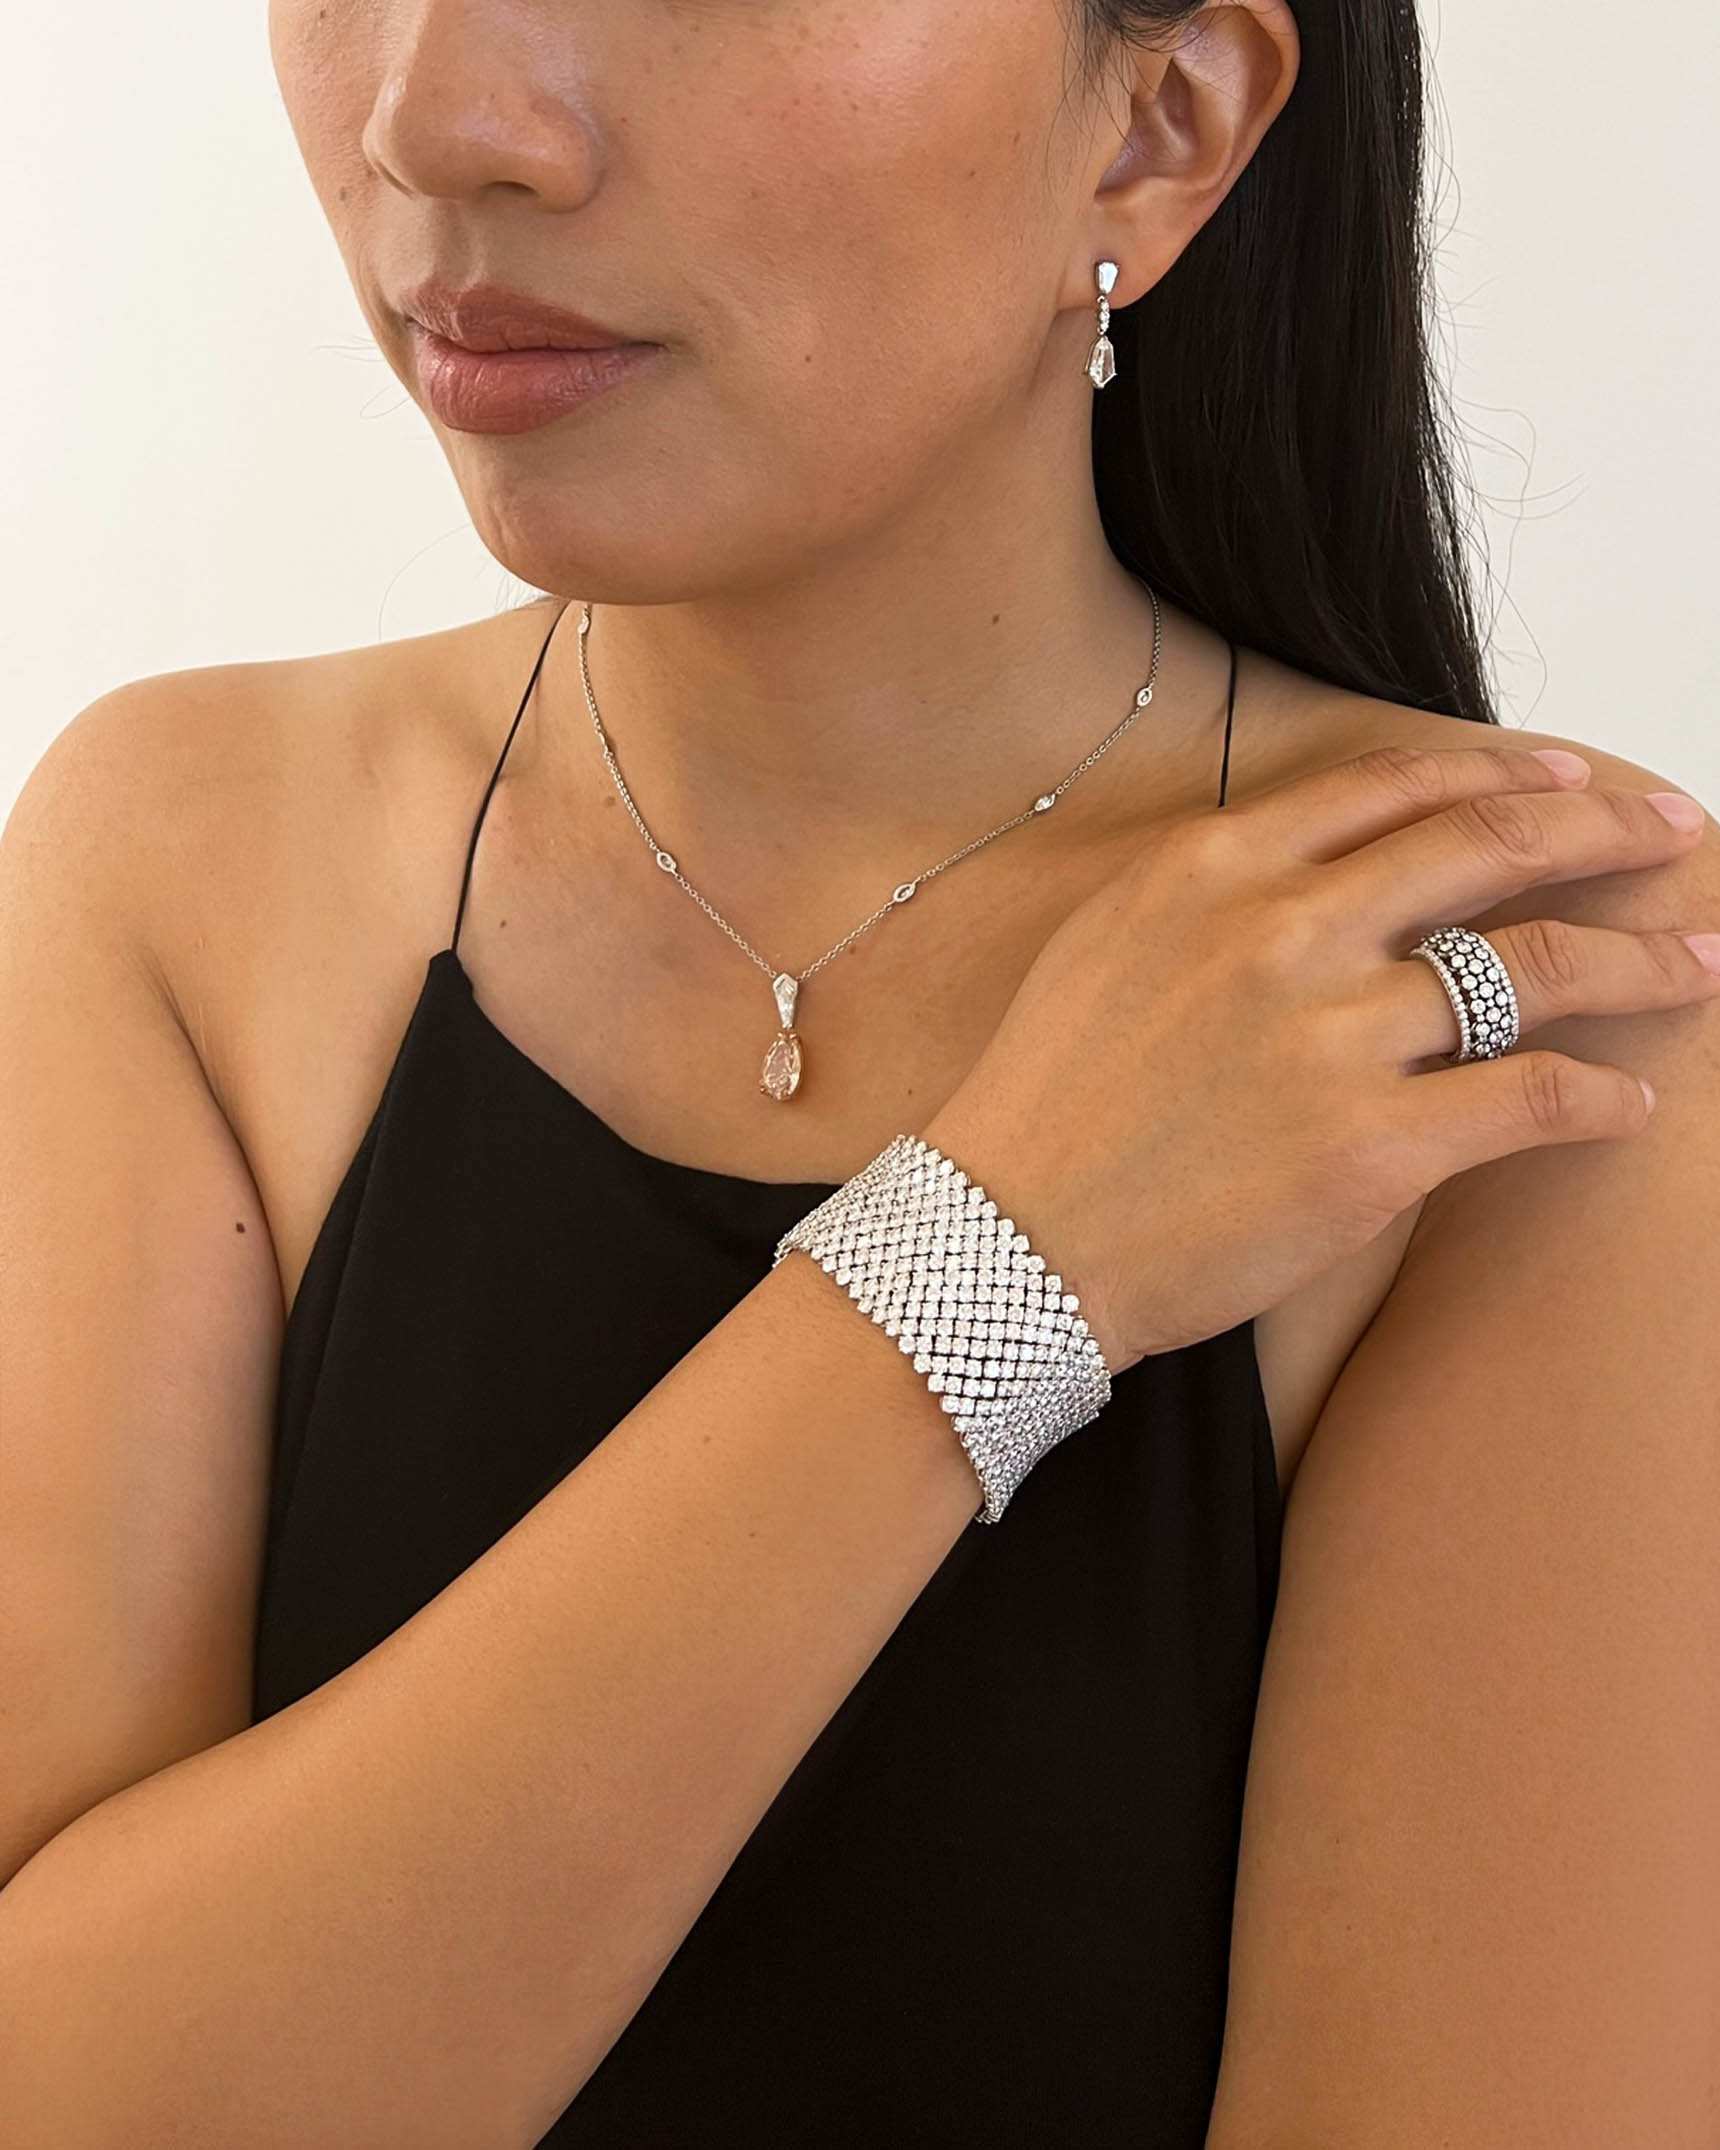 Diamond Earrings_Necklace_Ring and Bracelet EDFKK03392 – PNMTG03089 – RADPL06610 – BDOTK03187